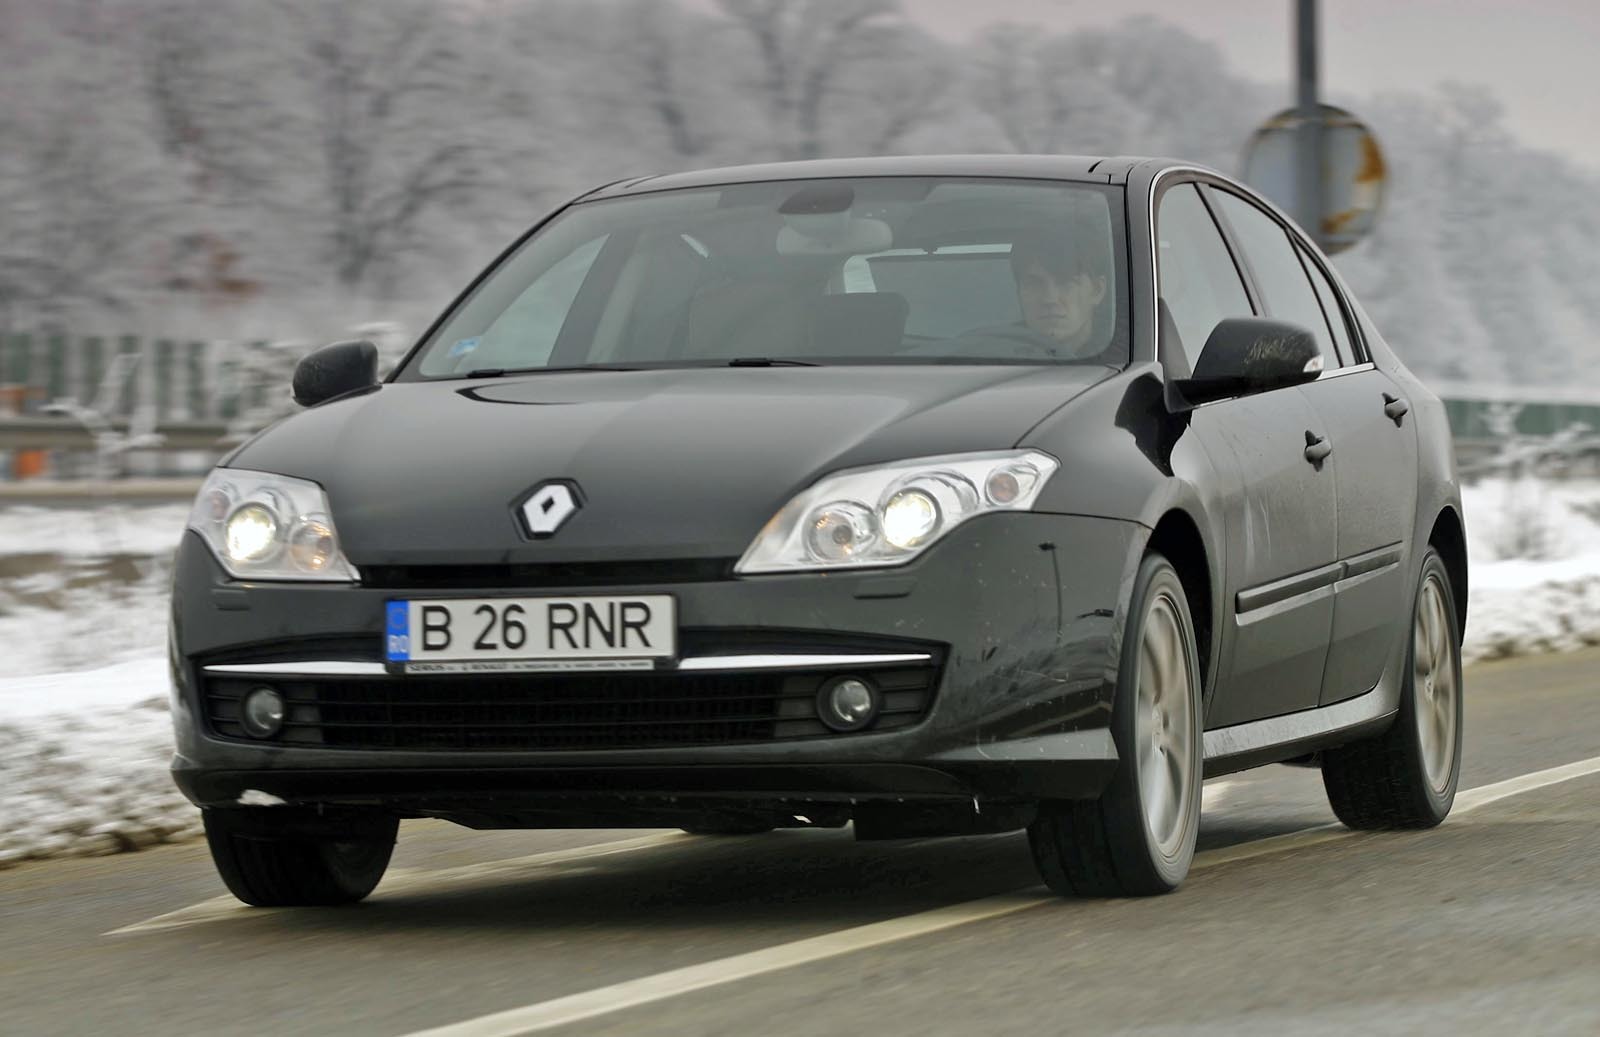 Renault Laguna ofera cel mai bun compromis intre confort si stabilitate in curbe